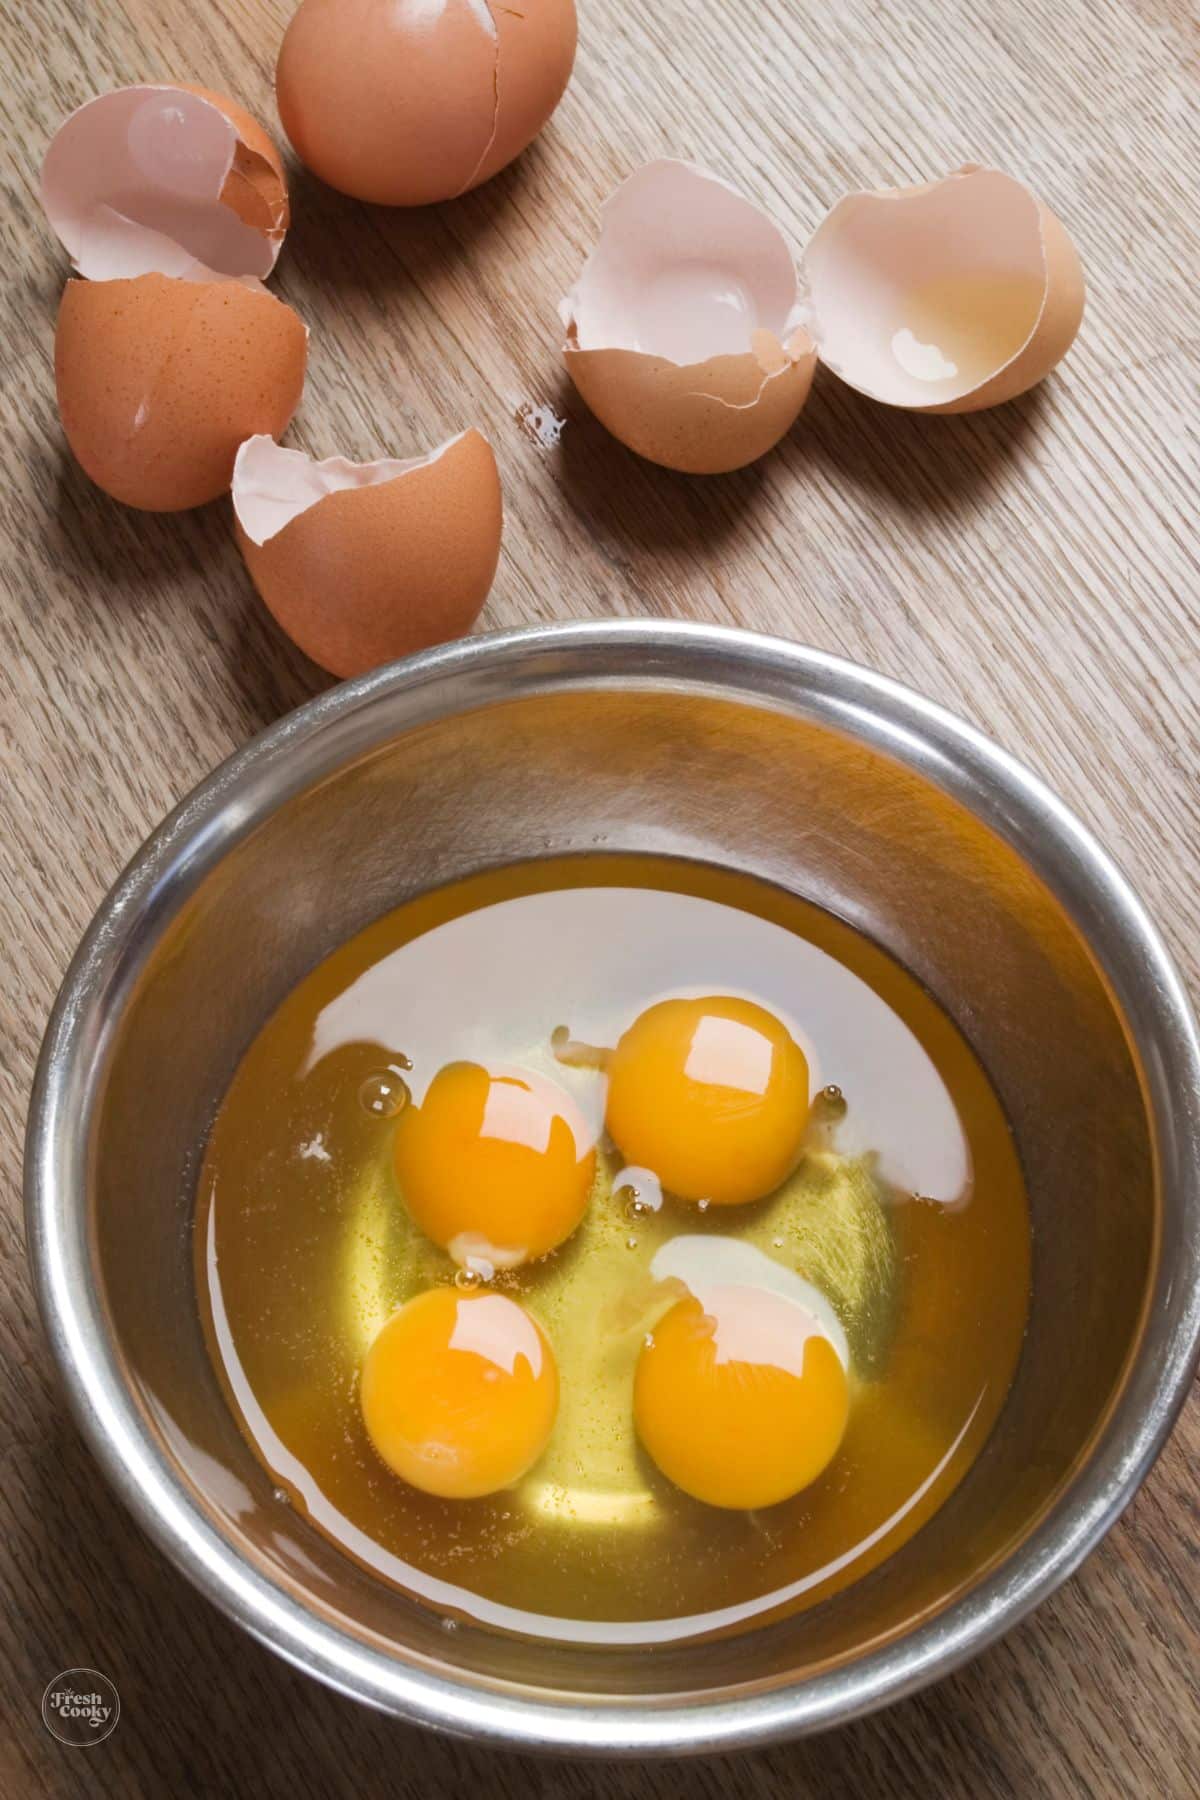 4 eggs cracked into a prep bowl.